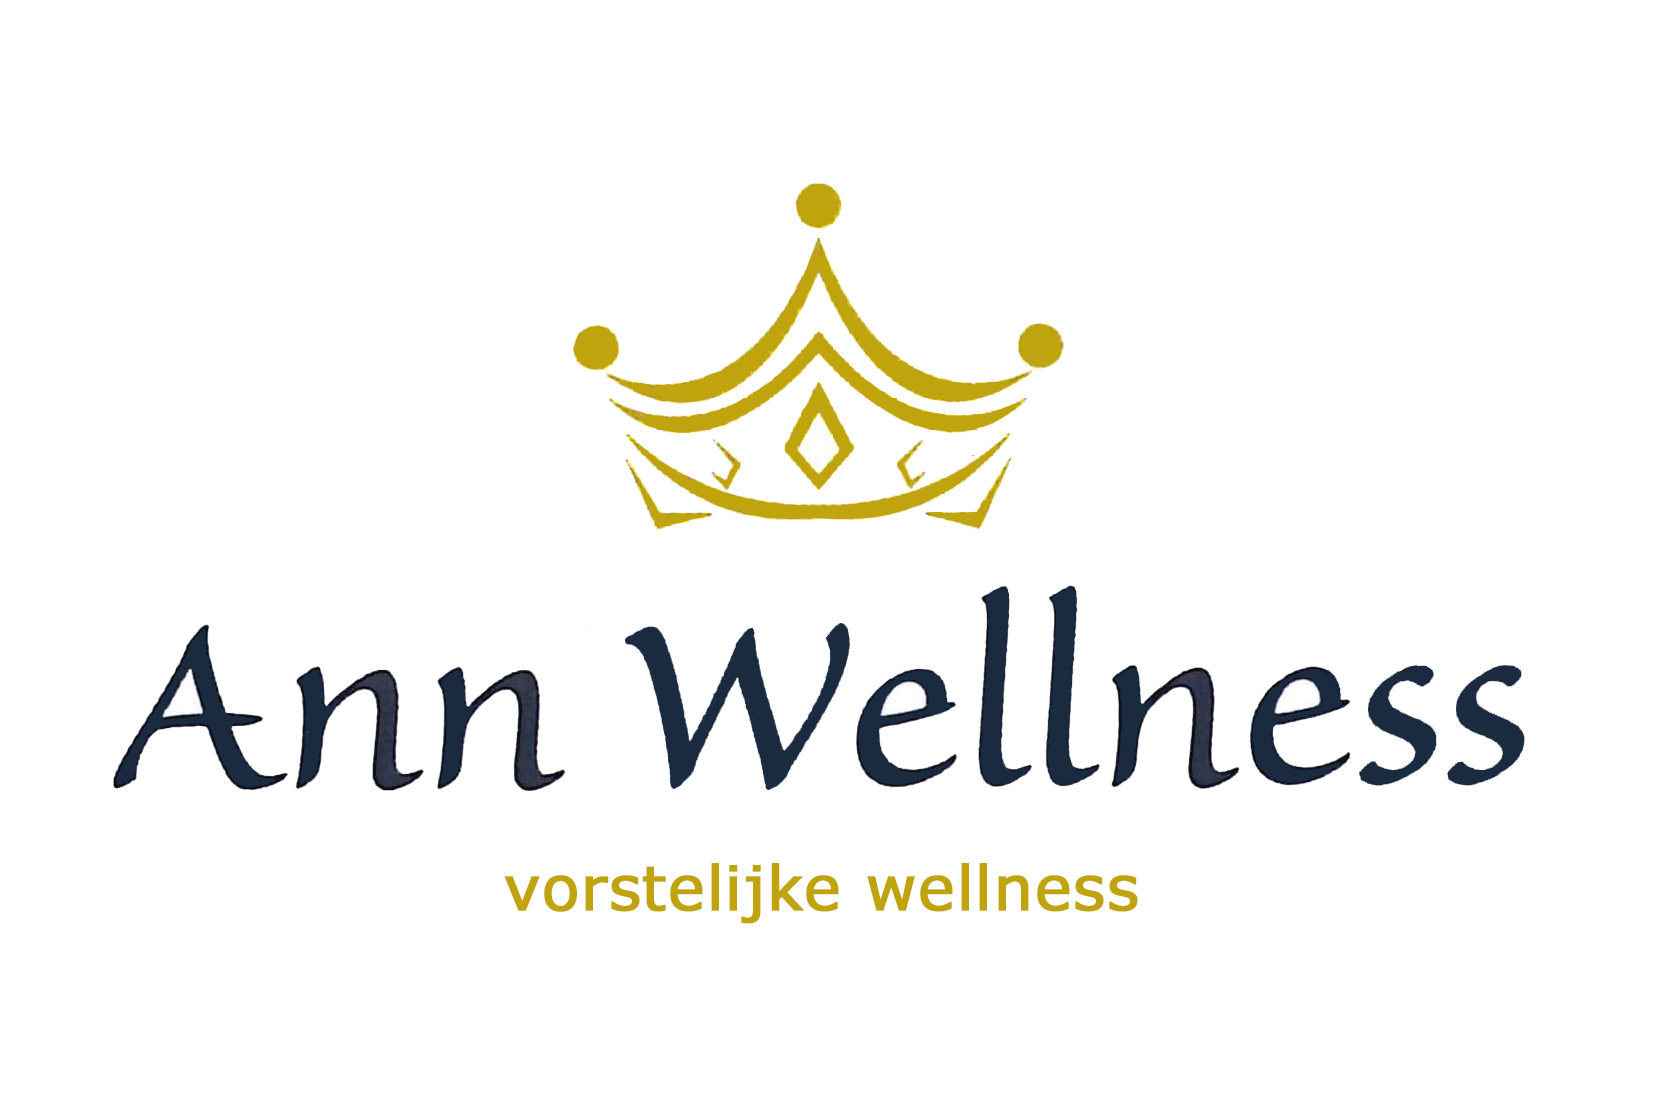 Ann Wellness - Vorstelijk Wellness